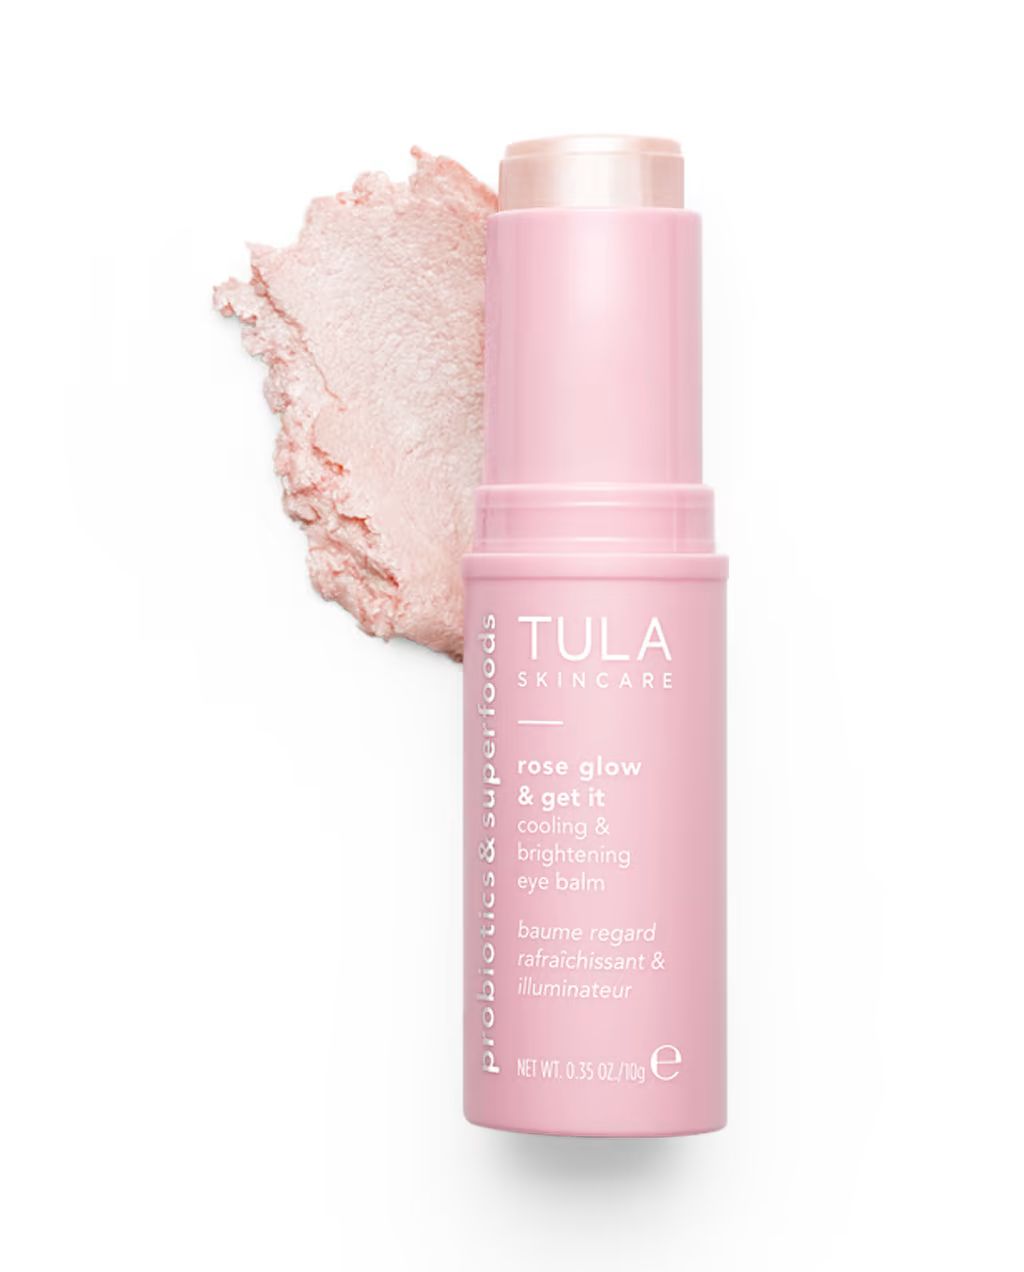 cooling & brightening eye balm | Tula Skincare